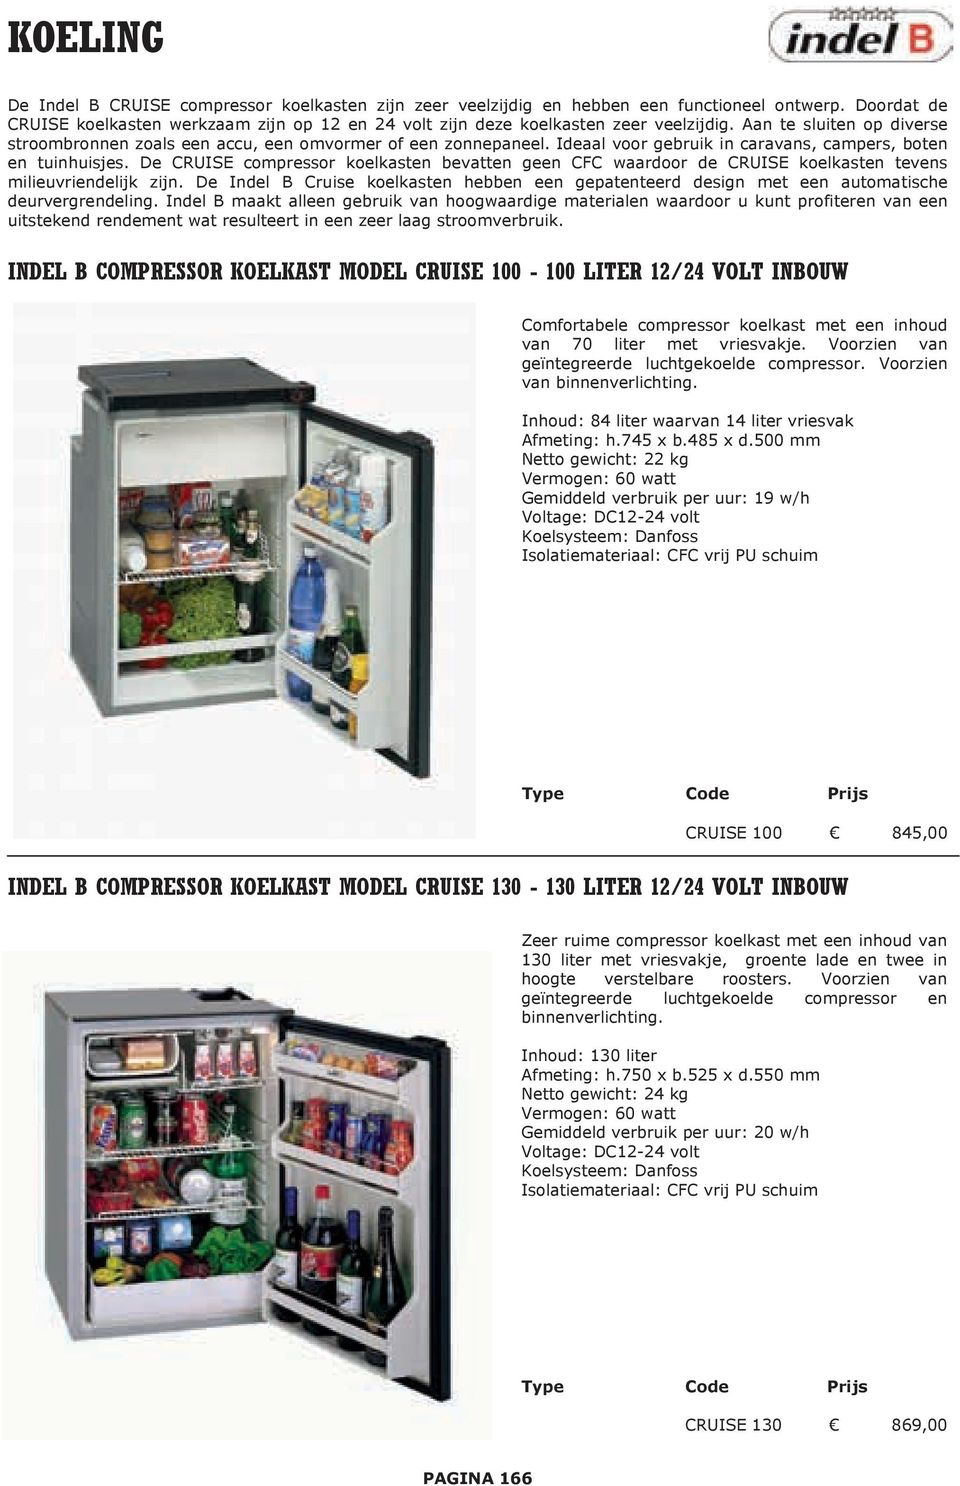 De CRUISE compressor koelkasten bevatten geen CFC waardoor de CRUISE koelkasten tevens milieuvriendelijk zijn.